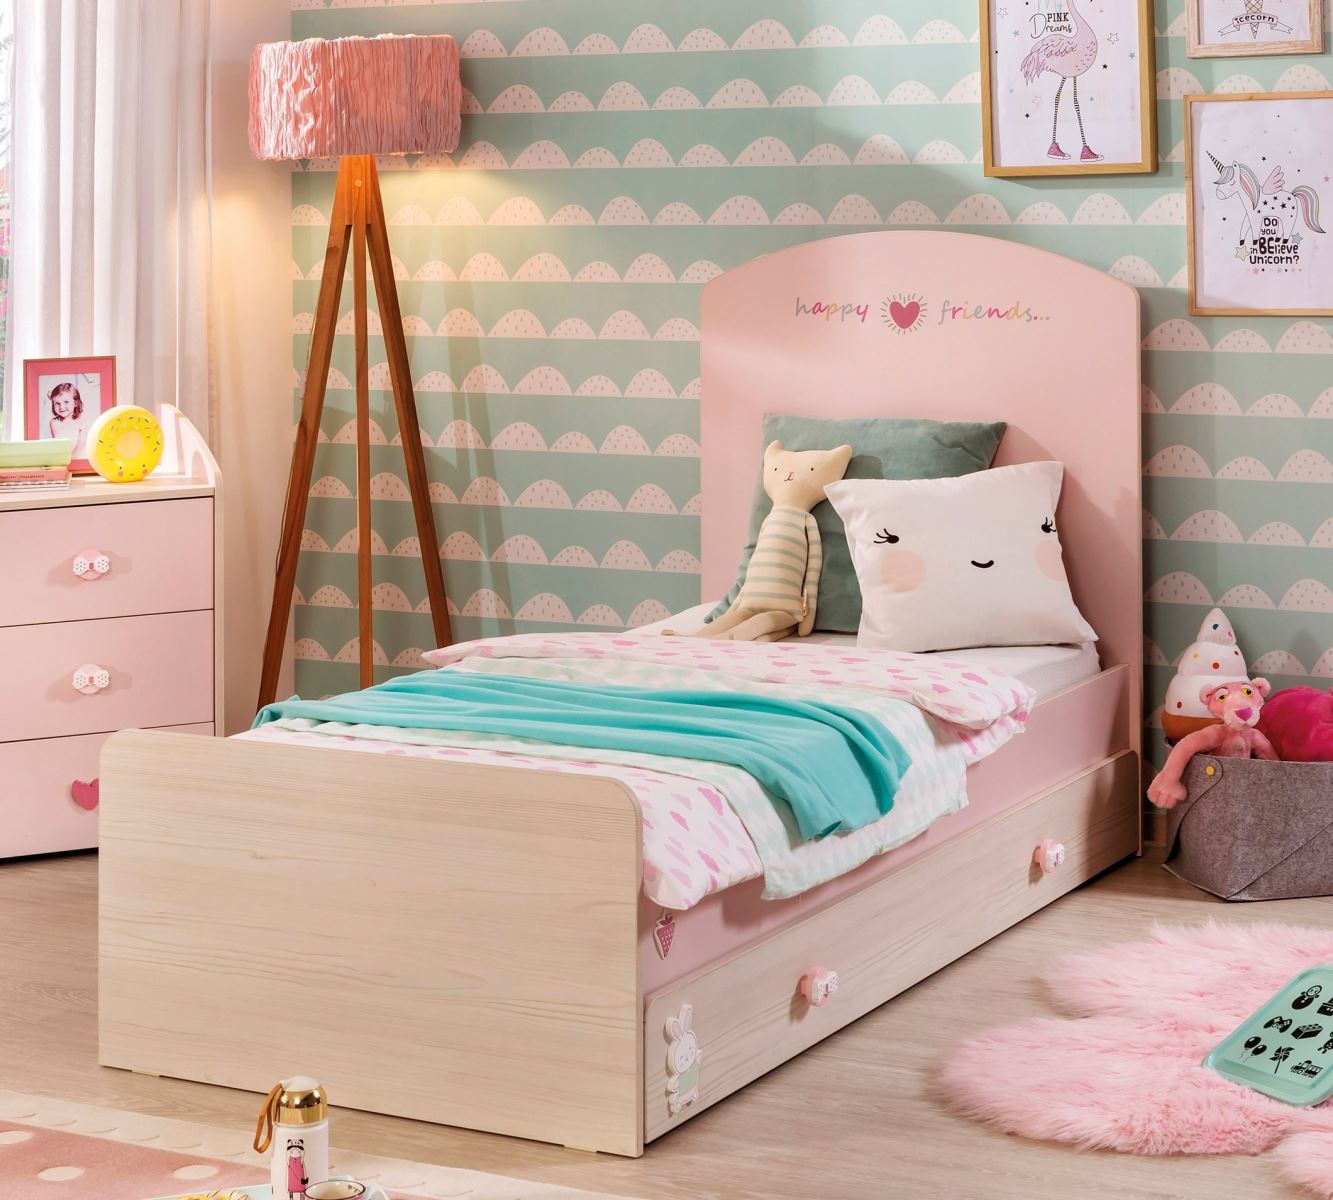 Thiết kế giường ngủ cho bé gái ấn tượng đảm bảo khiến con thích thú